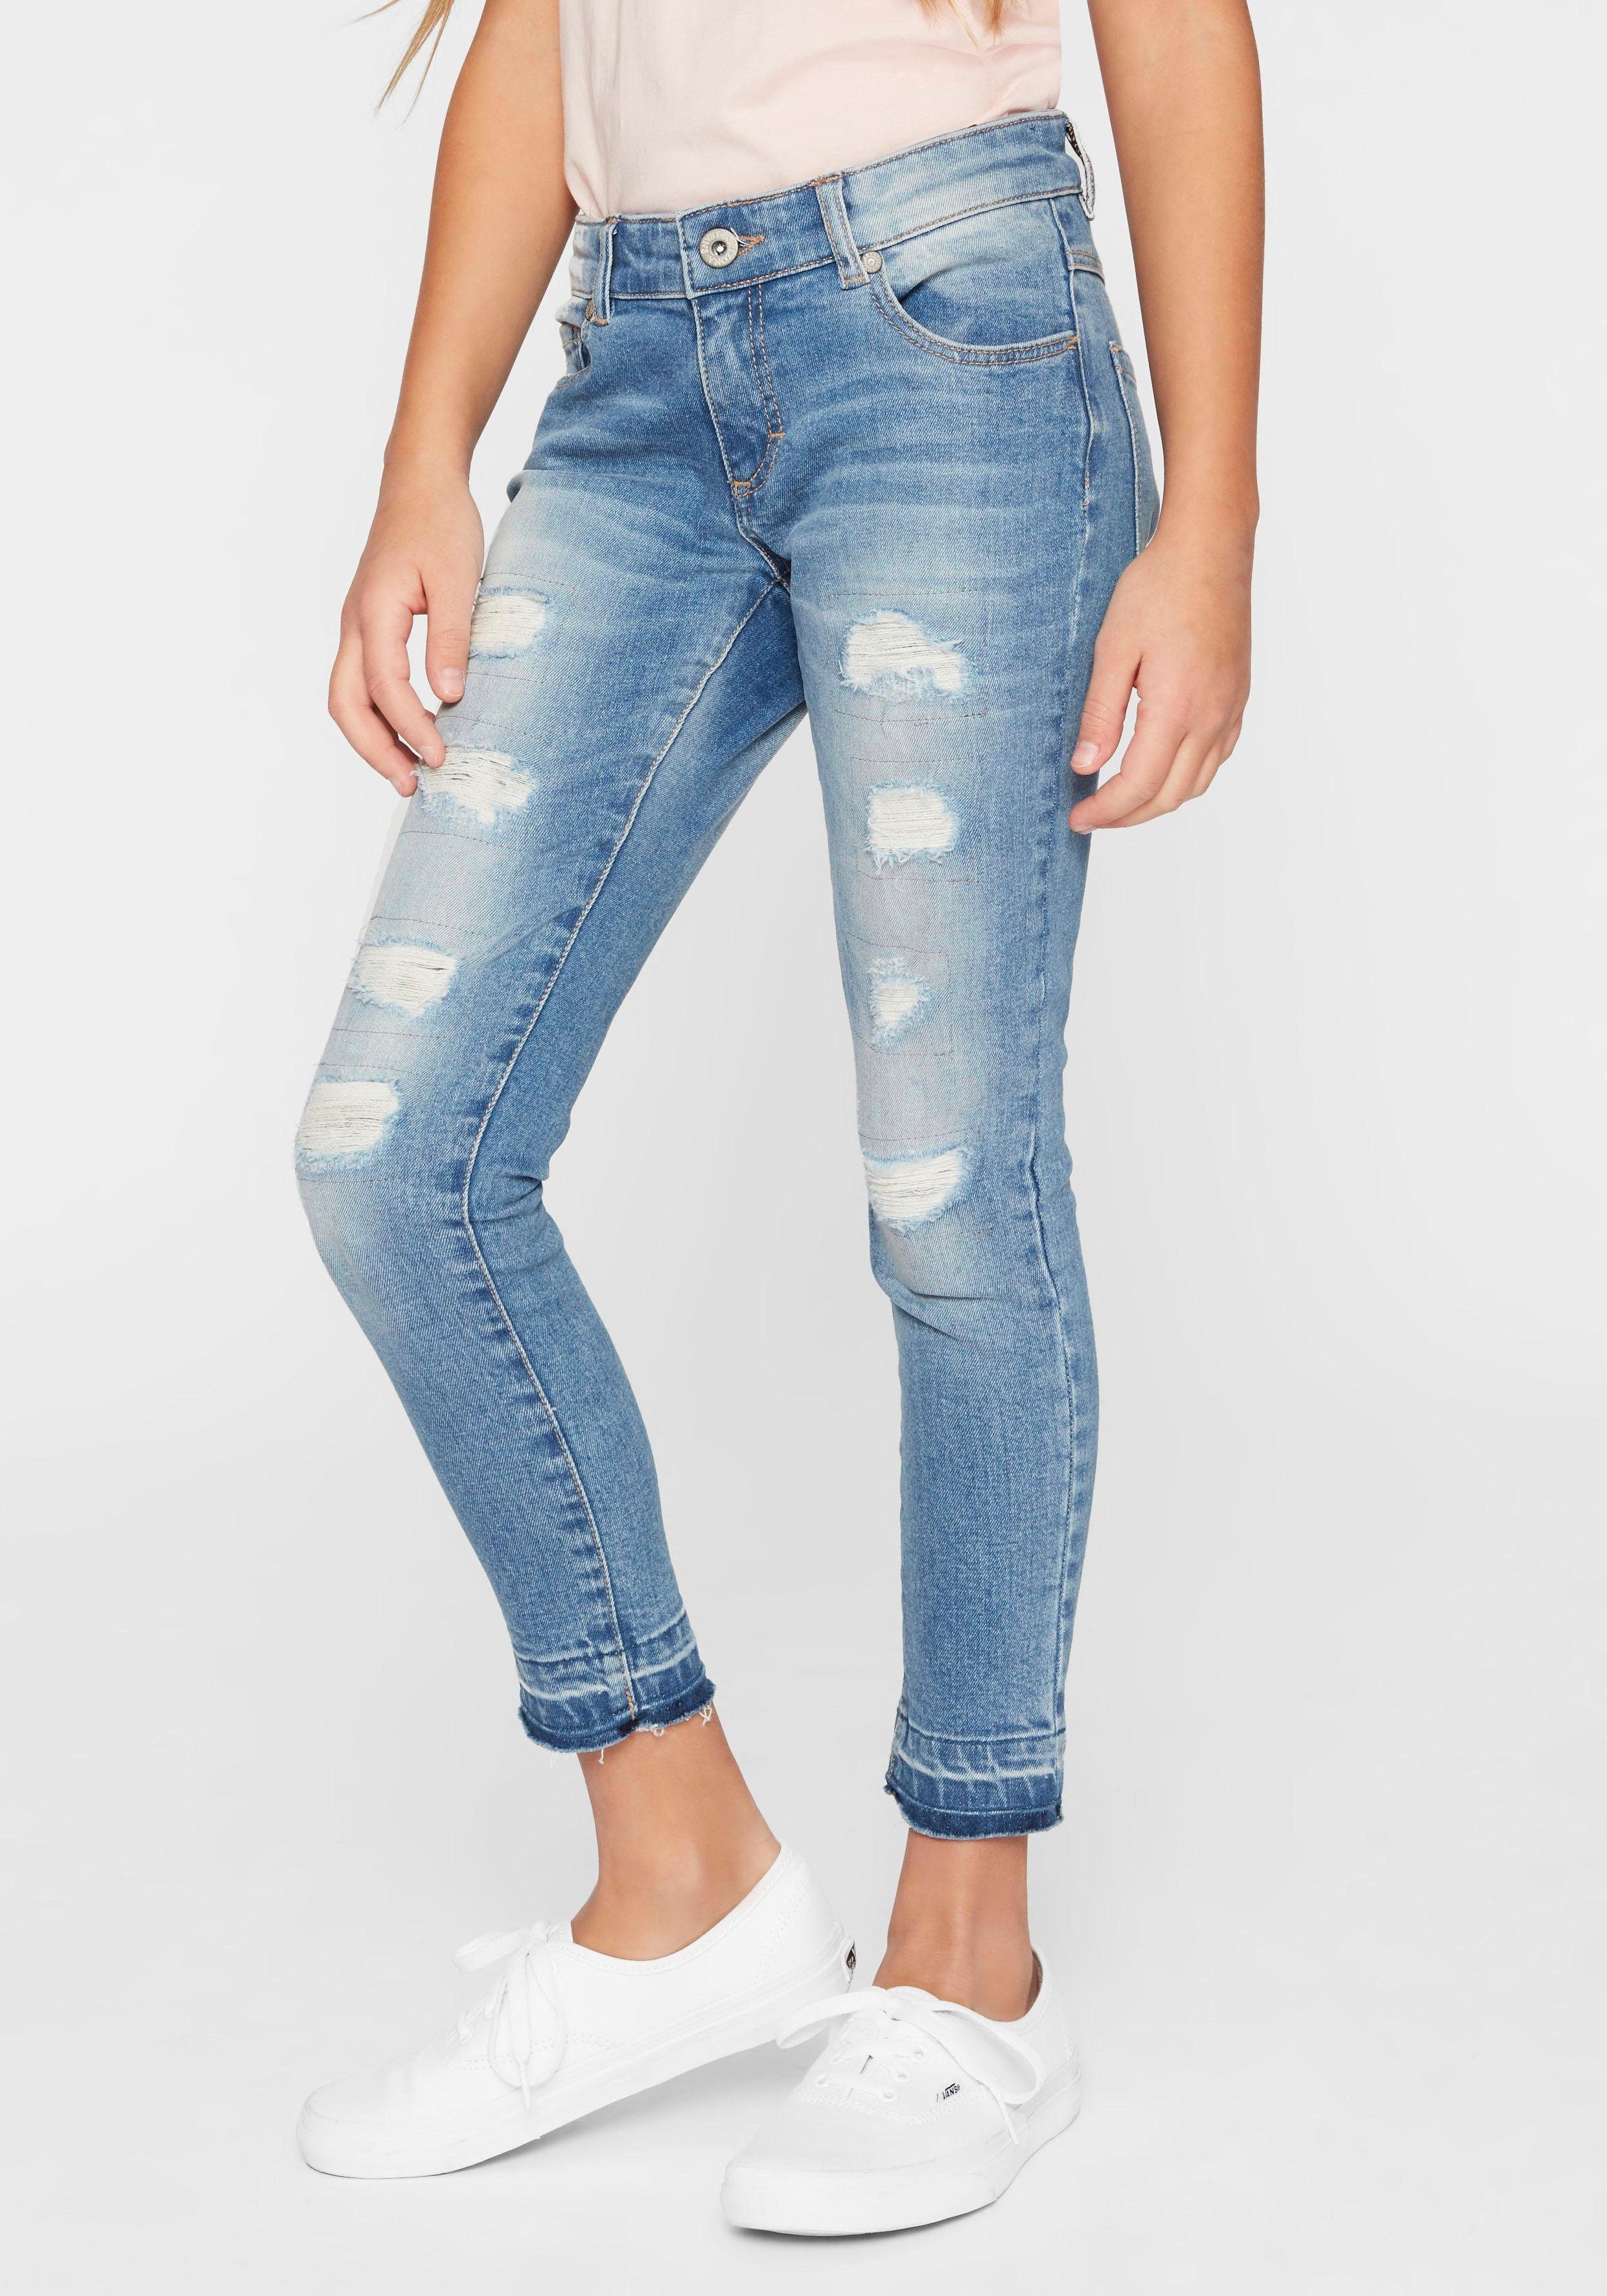 Mädchen Jeans online kaufen | OTTO